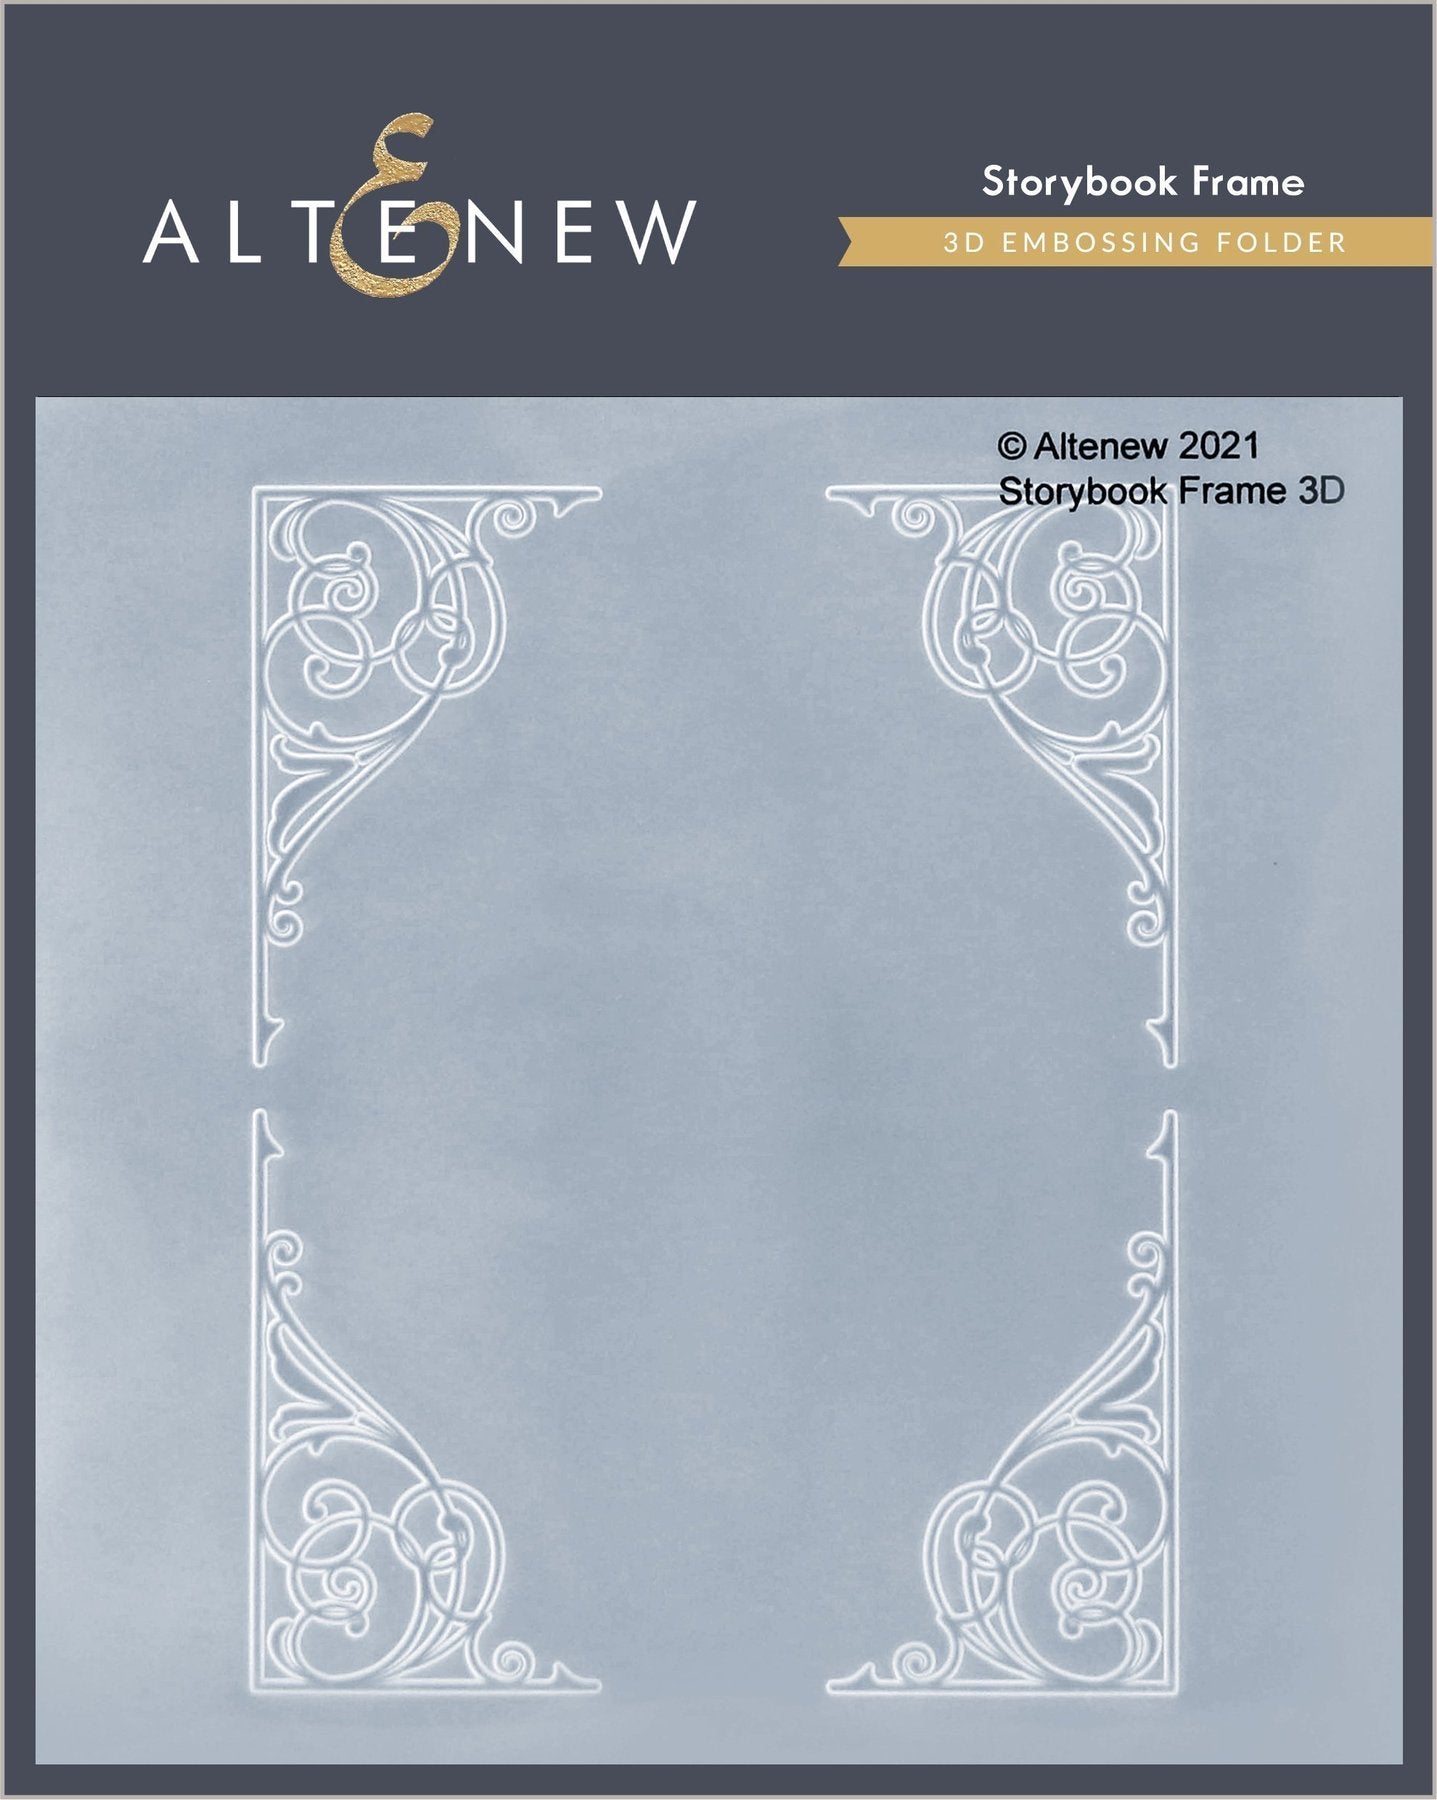 Altenew - Storybook Frame 3D Embossing Folder